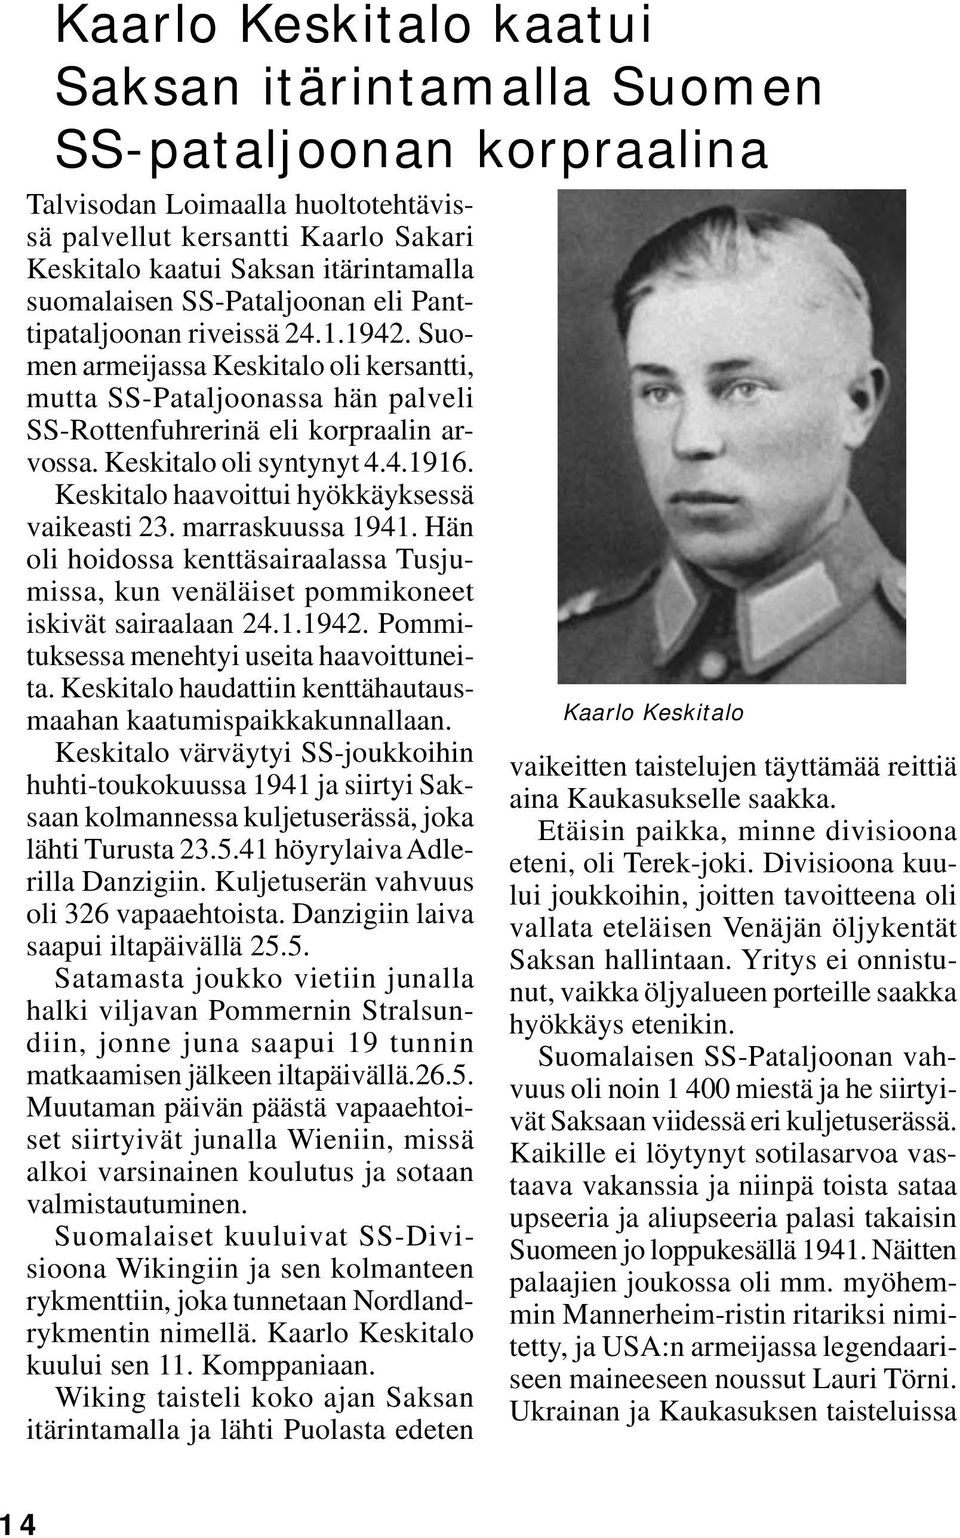 Keskitalo oli syntynyt 4.4.1916. Keskitalo haavoittui hyökkäyksessä vaikeasti 23. marraskuussa 1941. Hän oli hoidossa kenttäsairaalassa Tusjumissa, kun venäläiset pommikoneet iskivät sairaalaan 24.1.1942.